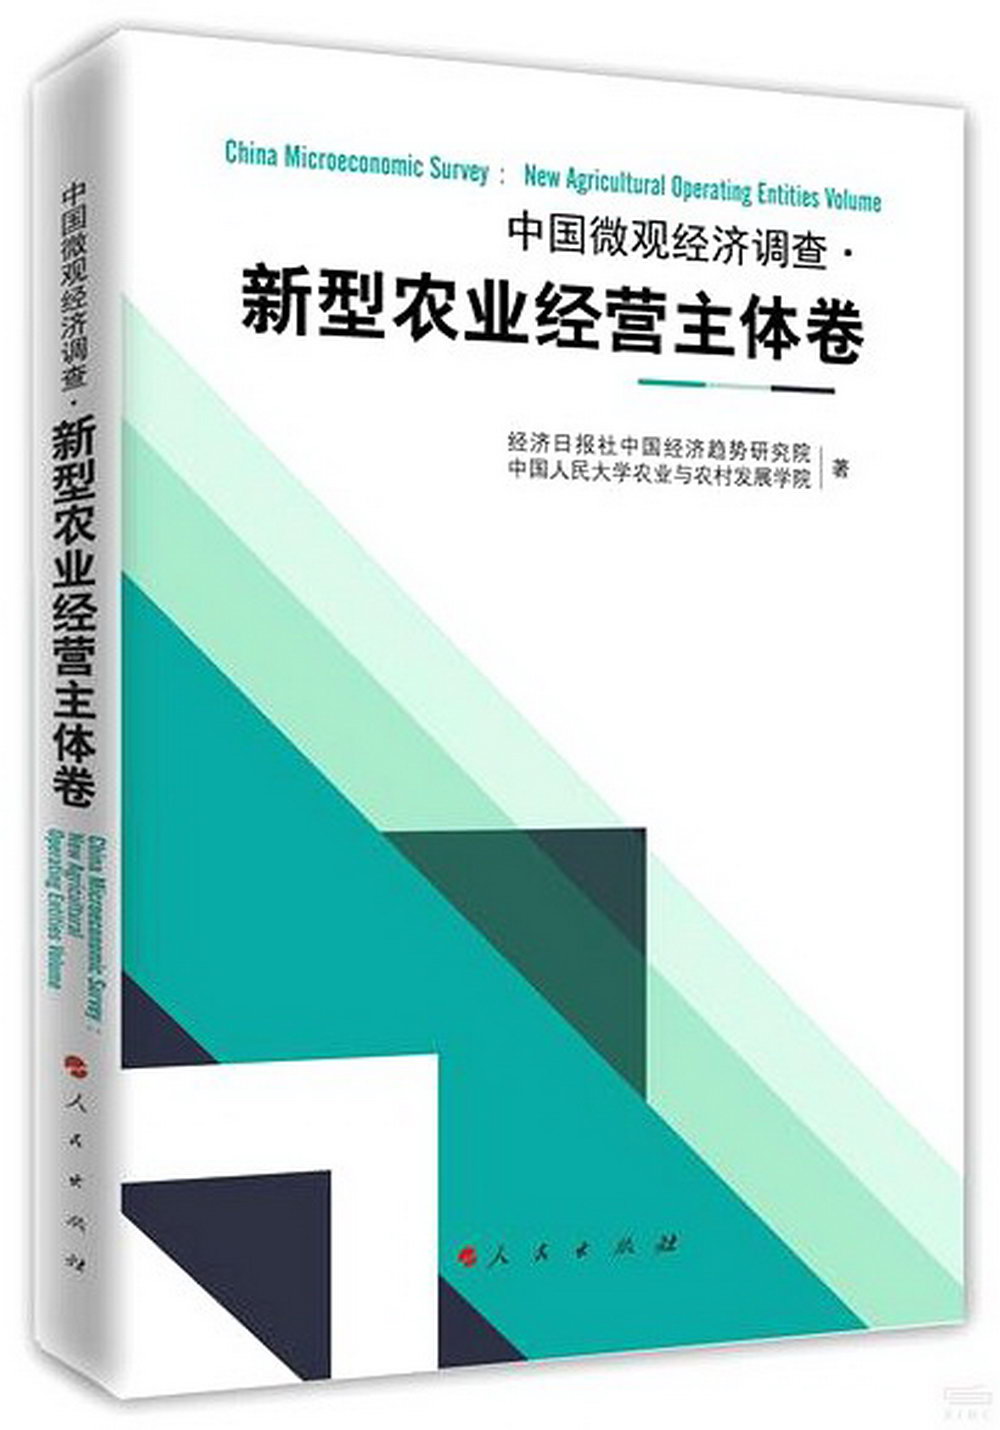 中國微觀經濟調查·新型農業經營主體卷